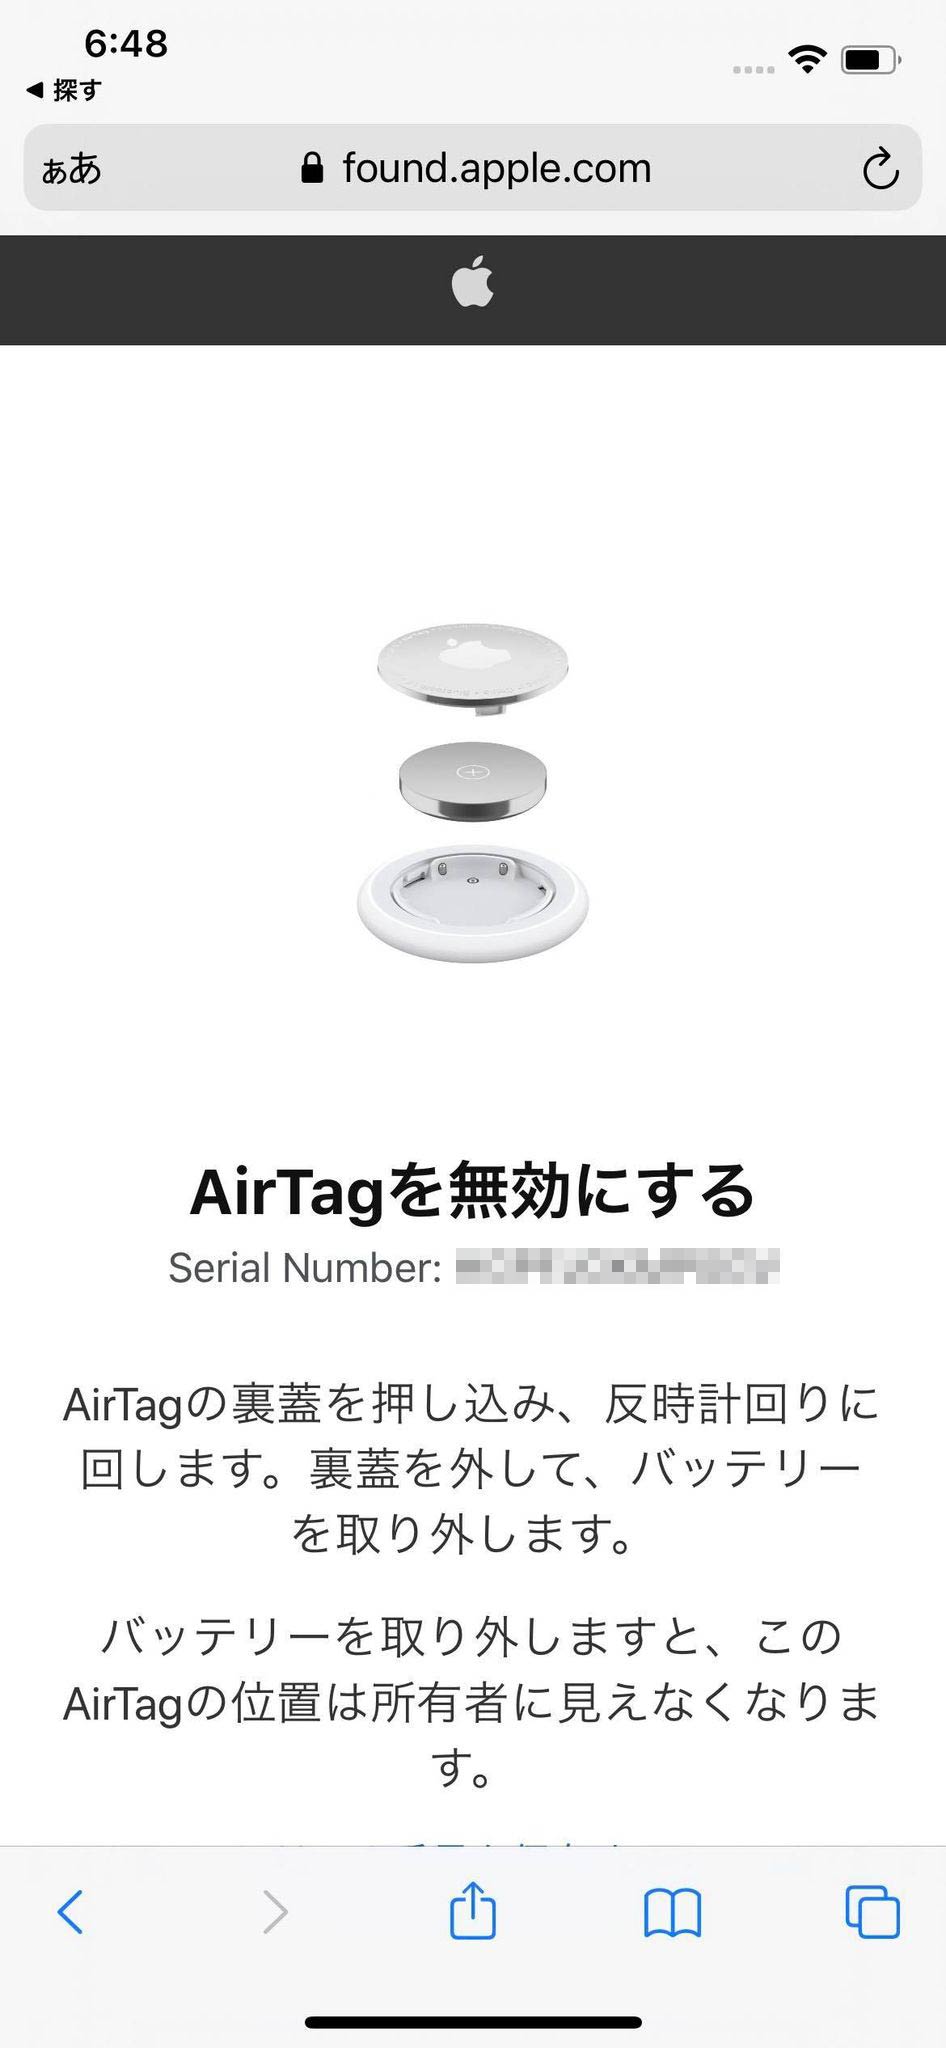 満を持して登場した Airtag の価値 10億台のiphoneが追跡してくれる安心感と盤石のプライバシー保護 本田雅一 Engadget 日本版